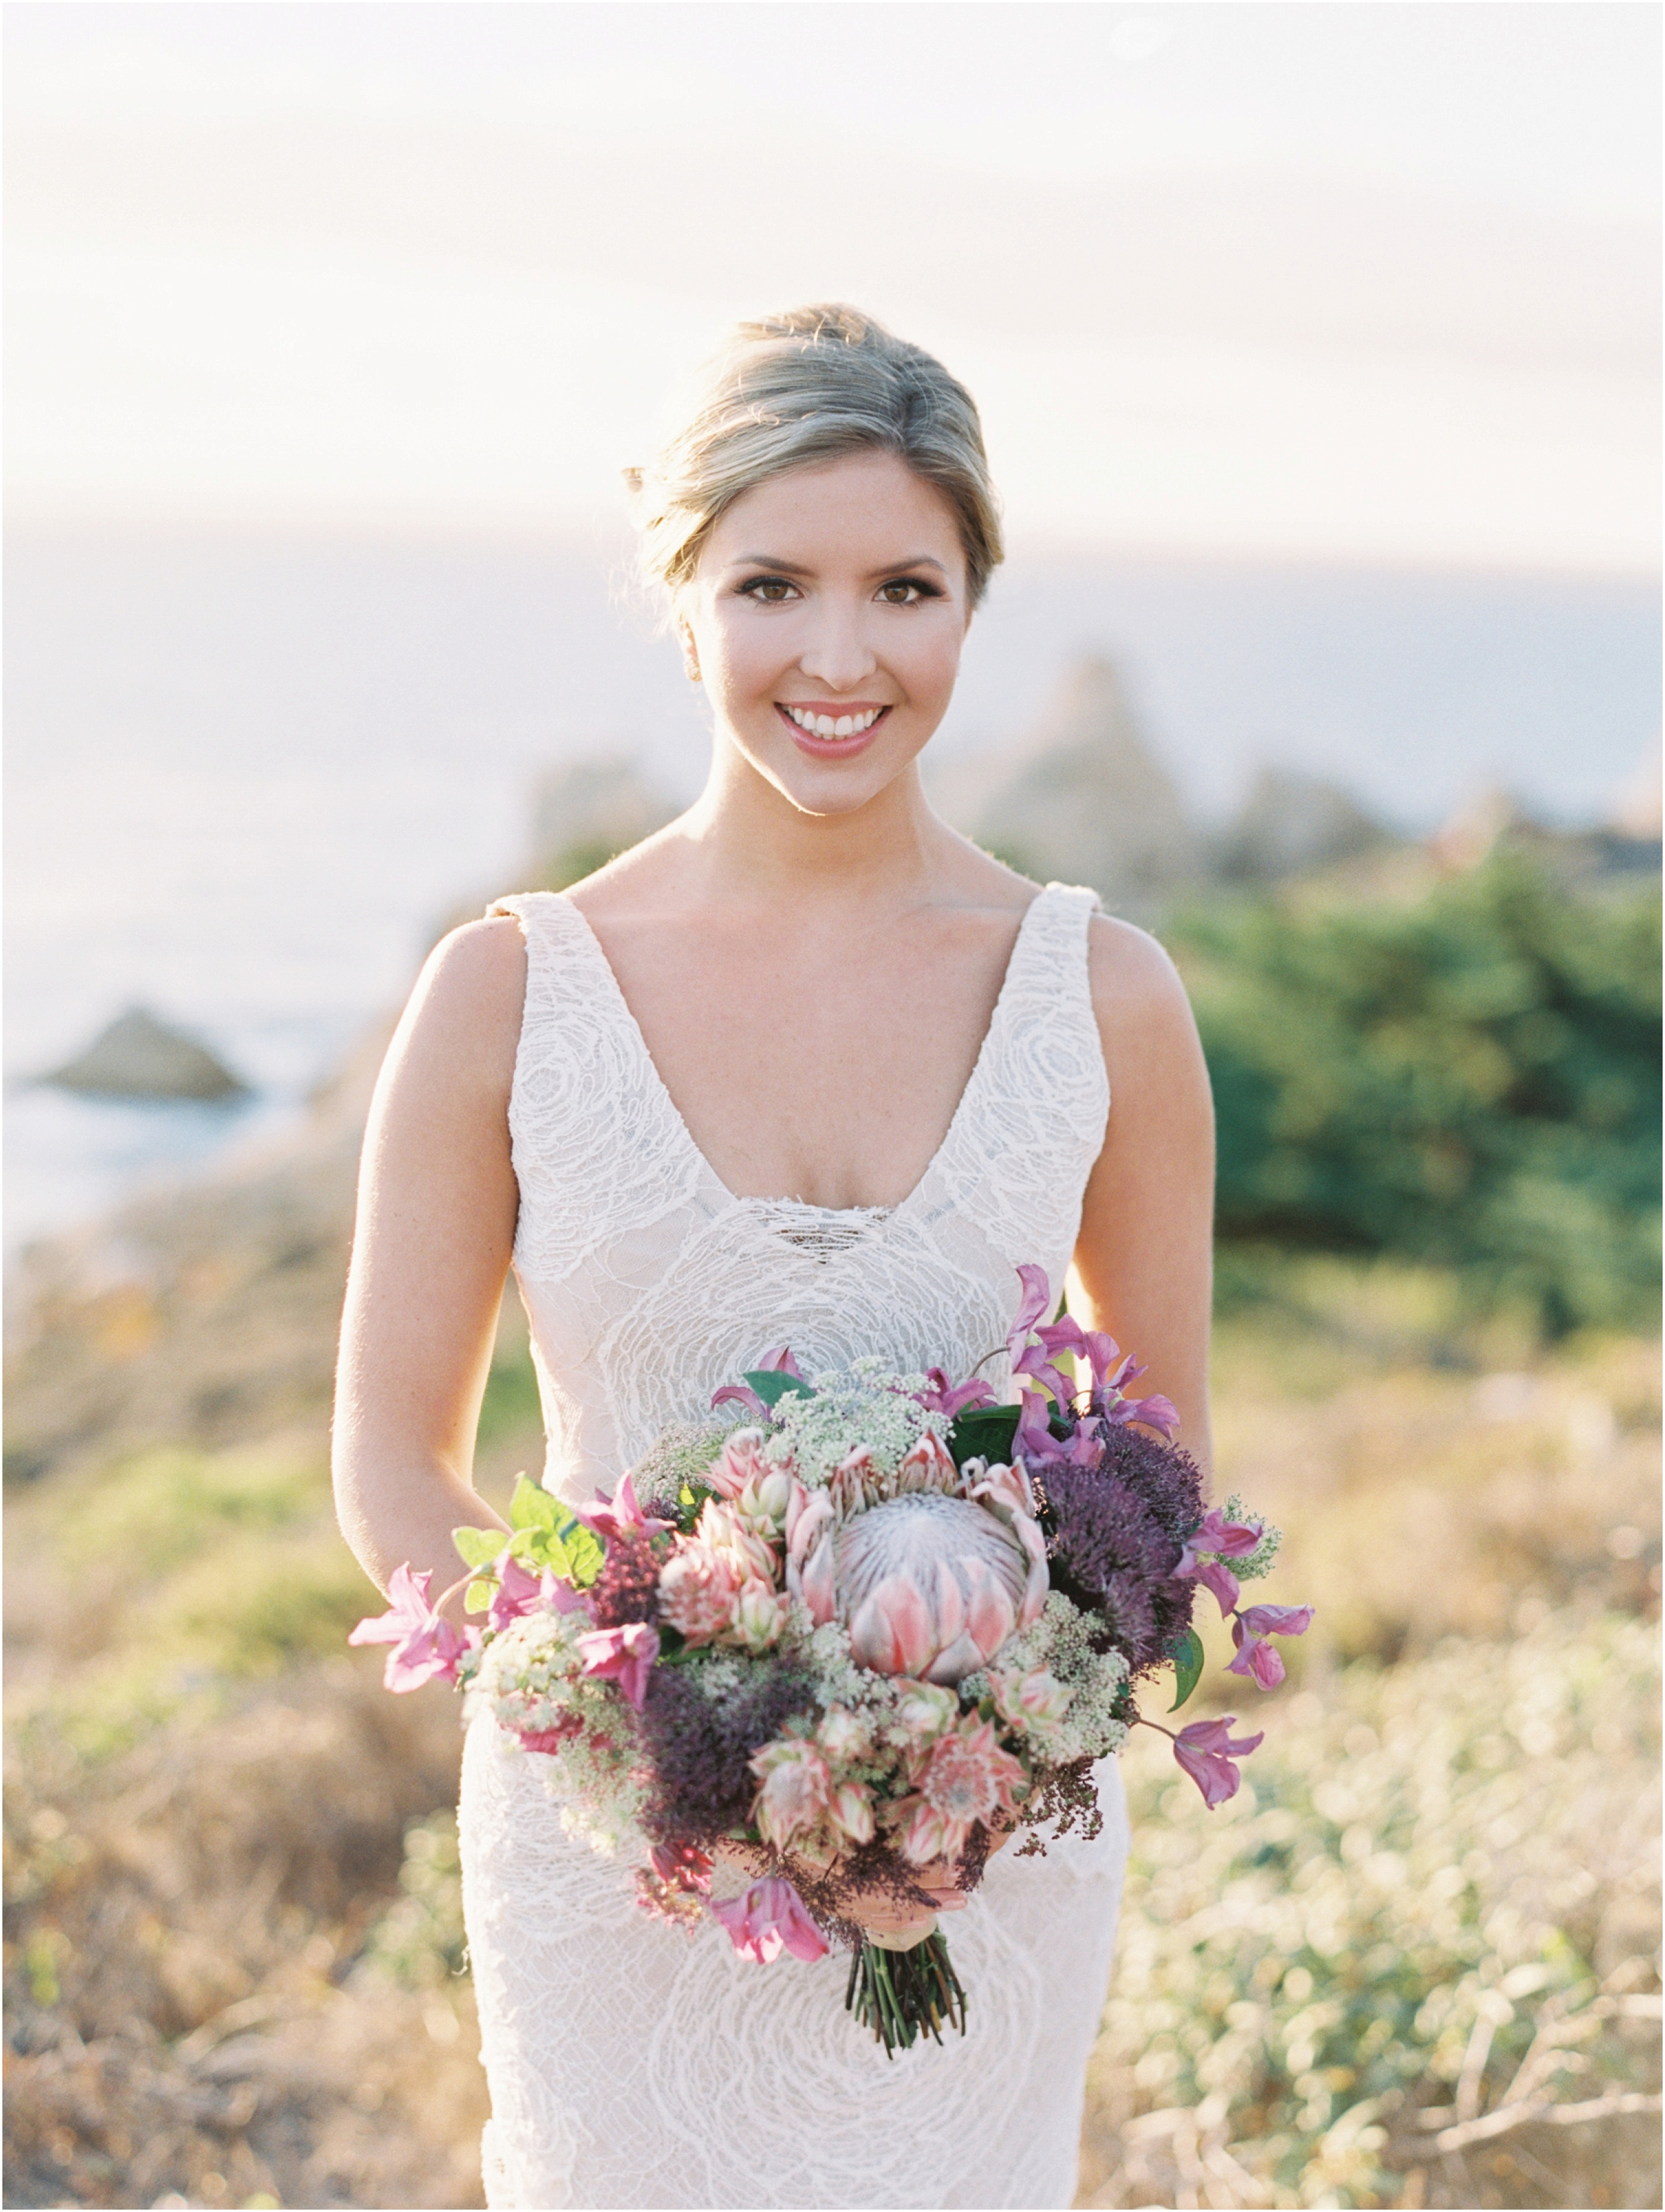 blueberryphotography.com | San Francisco Based Wedding & Lifestyle Photographer 